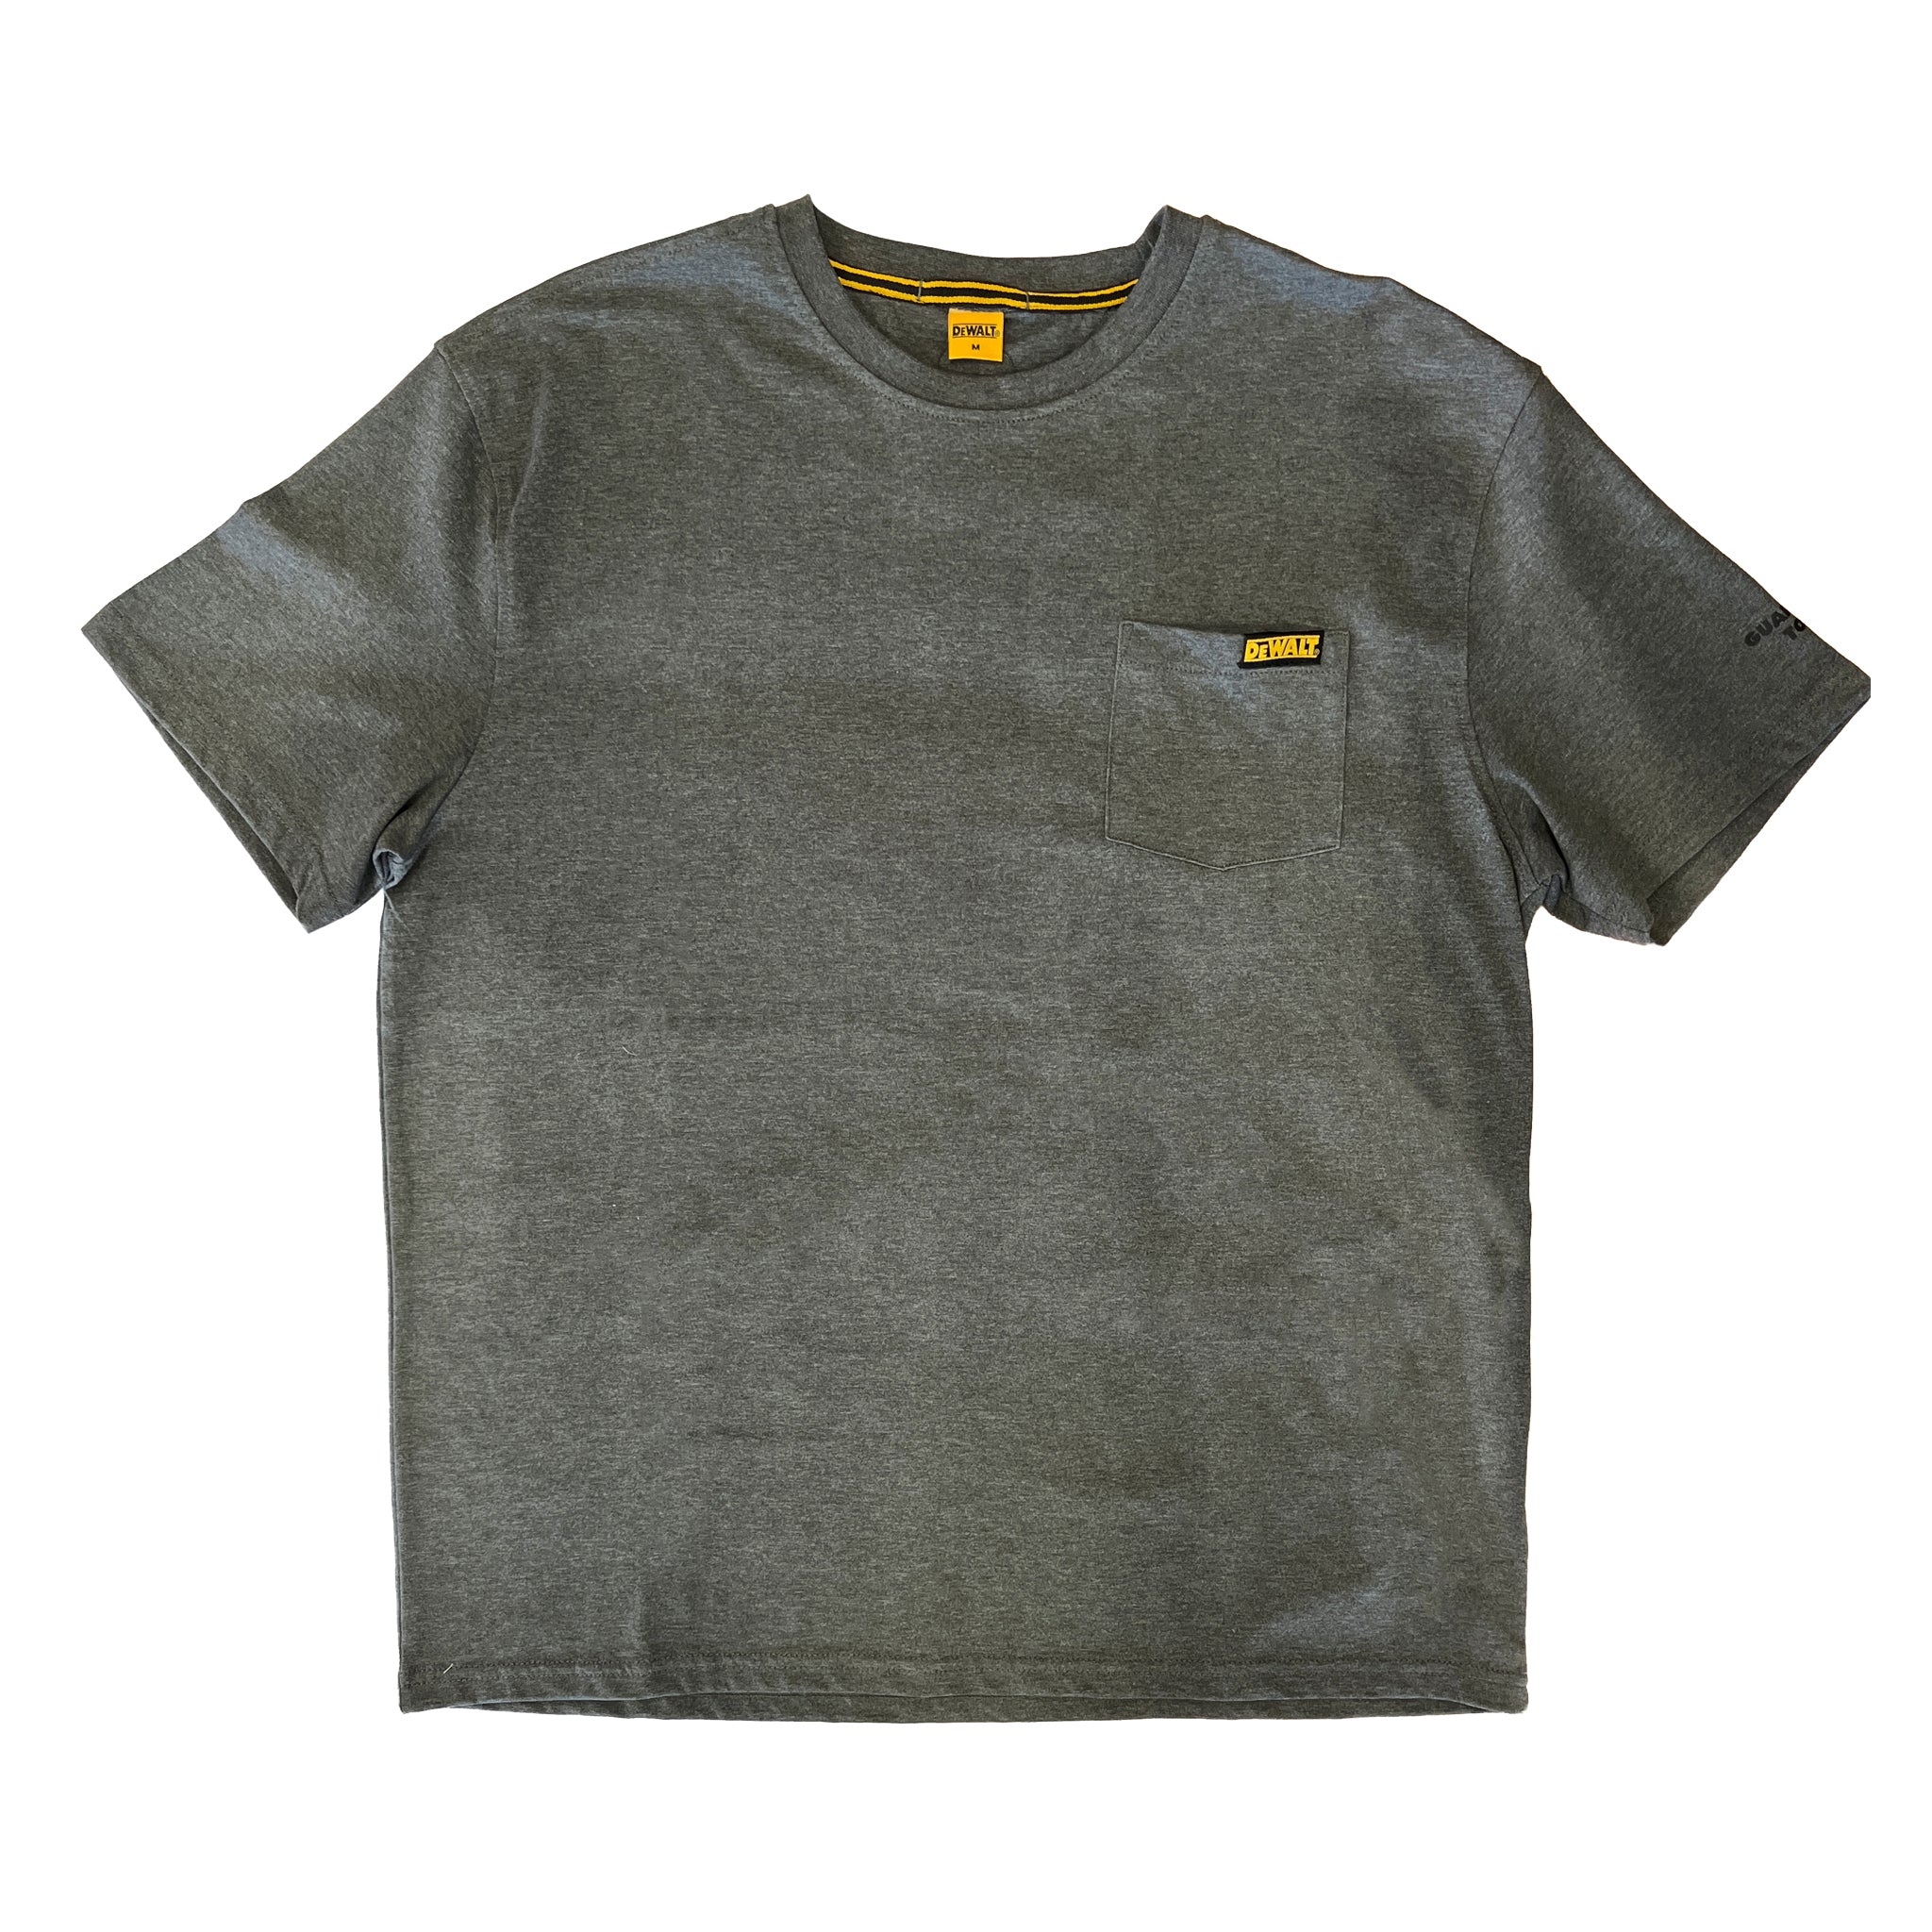 DEWALT Men's DXWW50018 Pocket T-Shirt – That Shoe Store and More